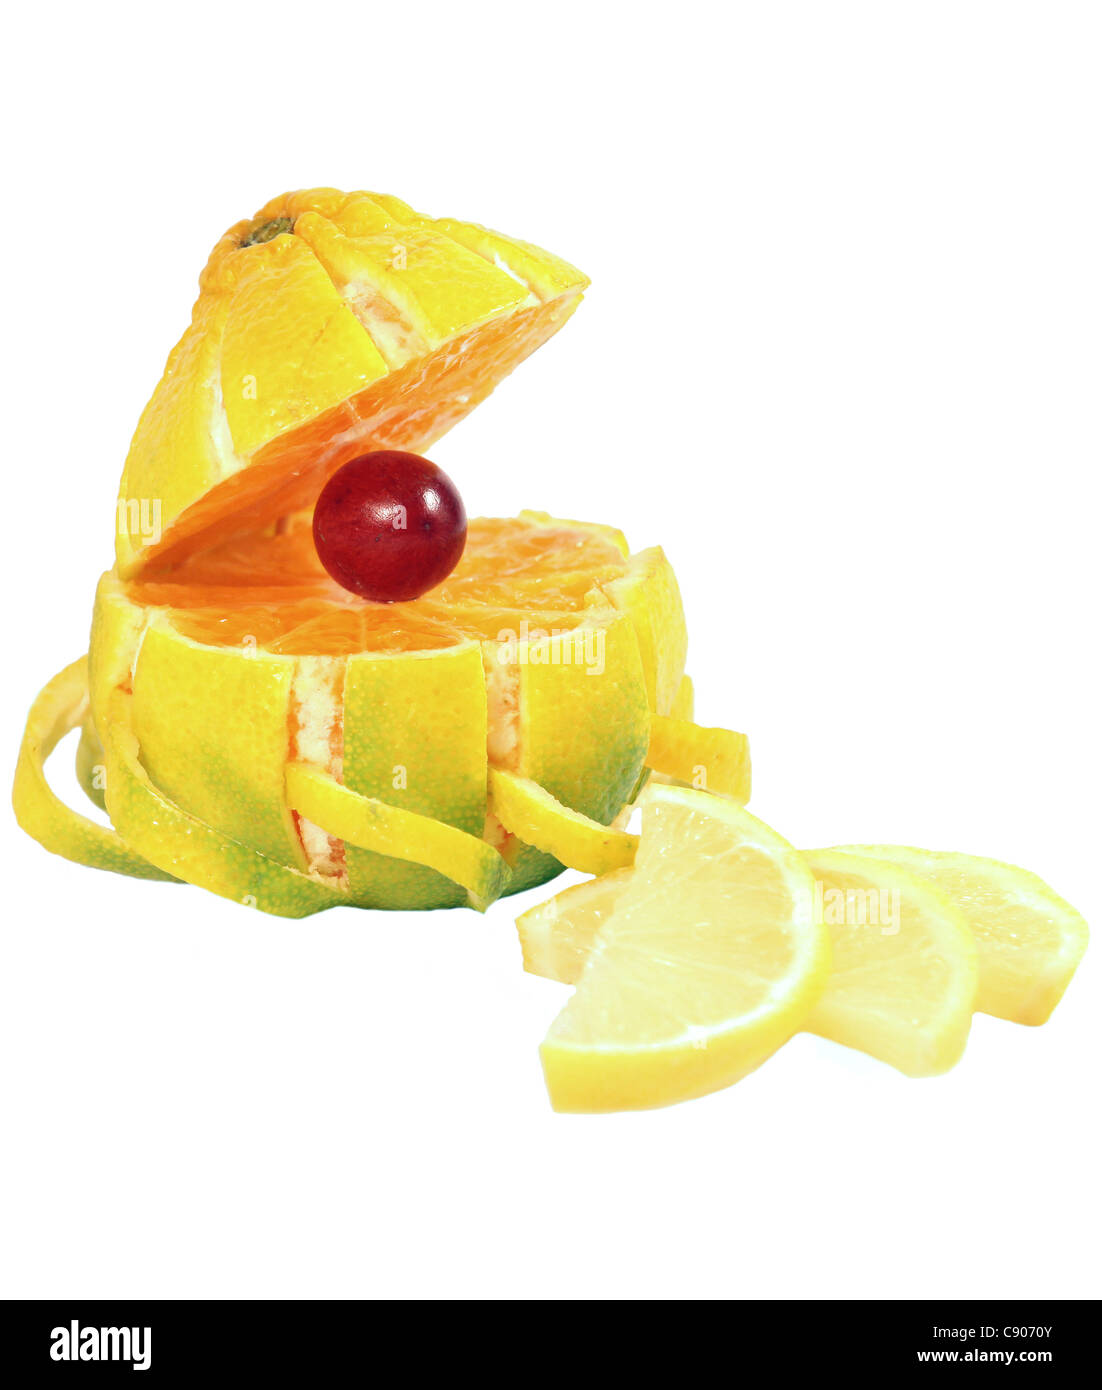 Mandarín frutas aisladas sobre fondo blanco. Foto de stock